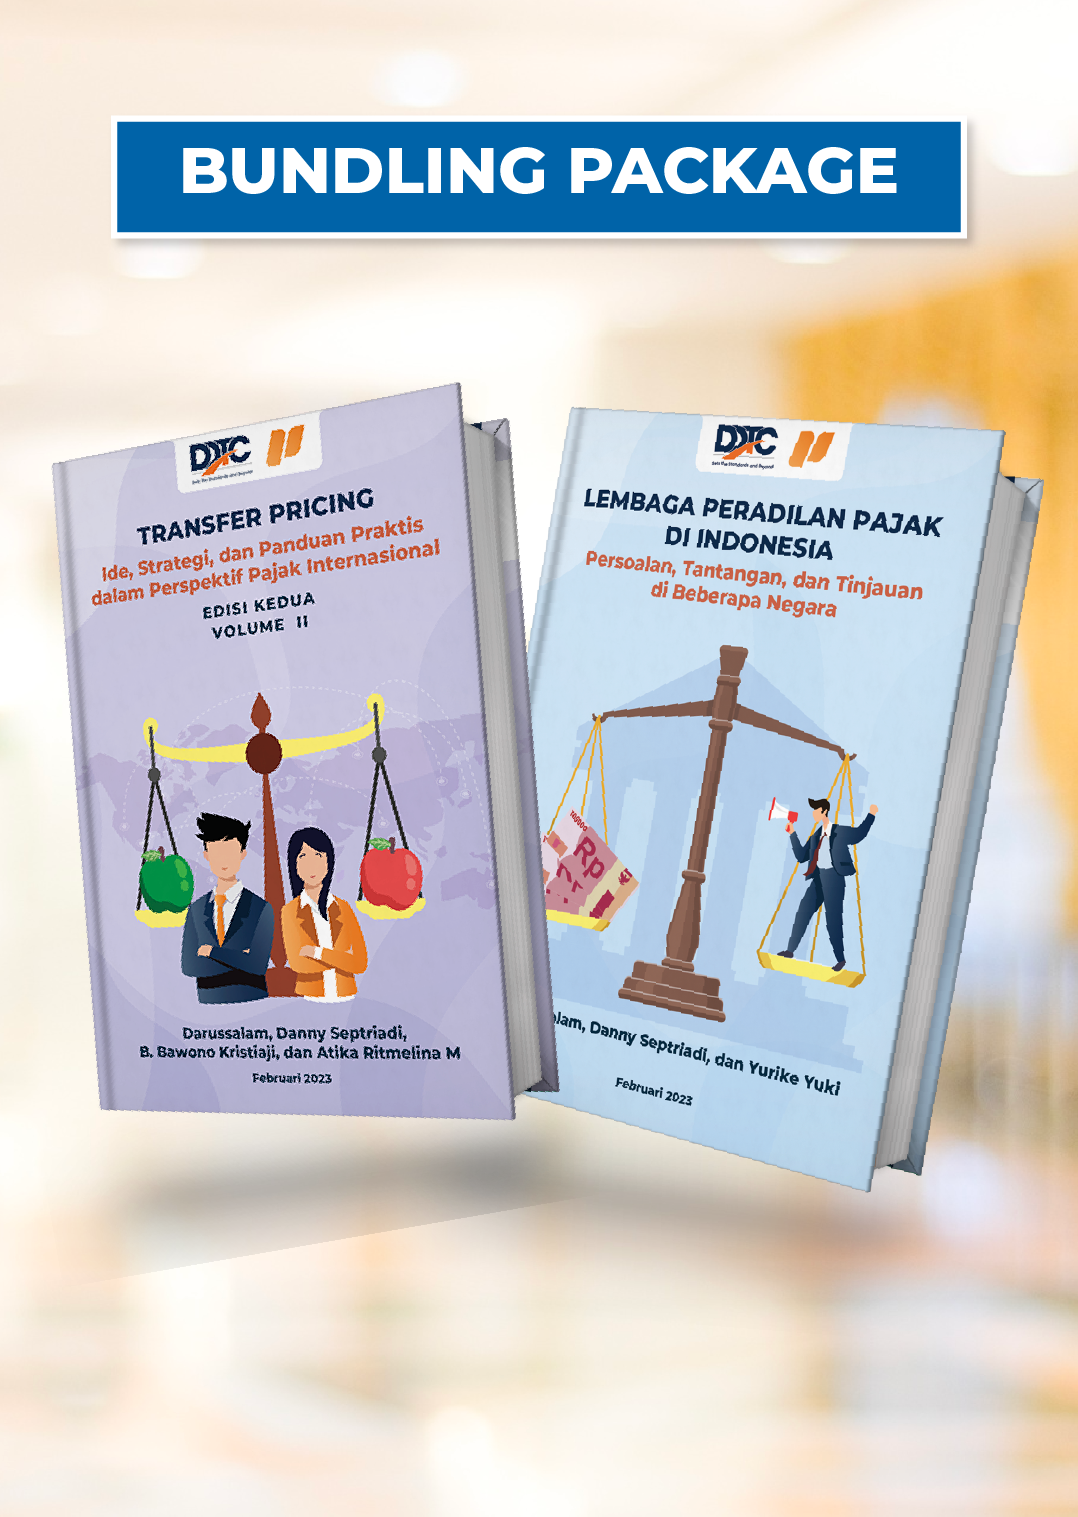 Buku Lembaga Peradilan Pajak di Indonesia + Buku Transfer Pricing Edisi 2 Volume II